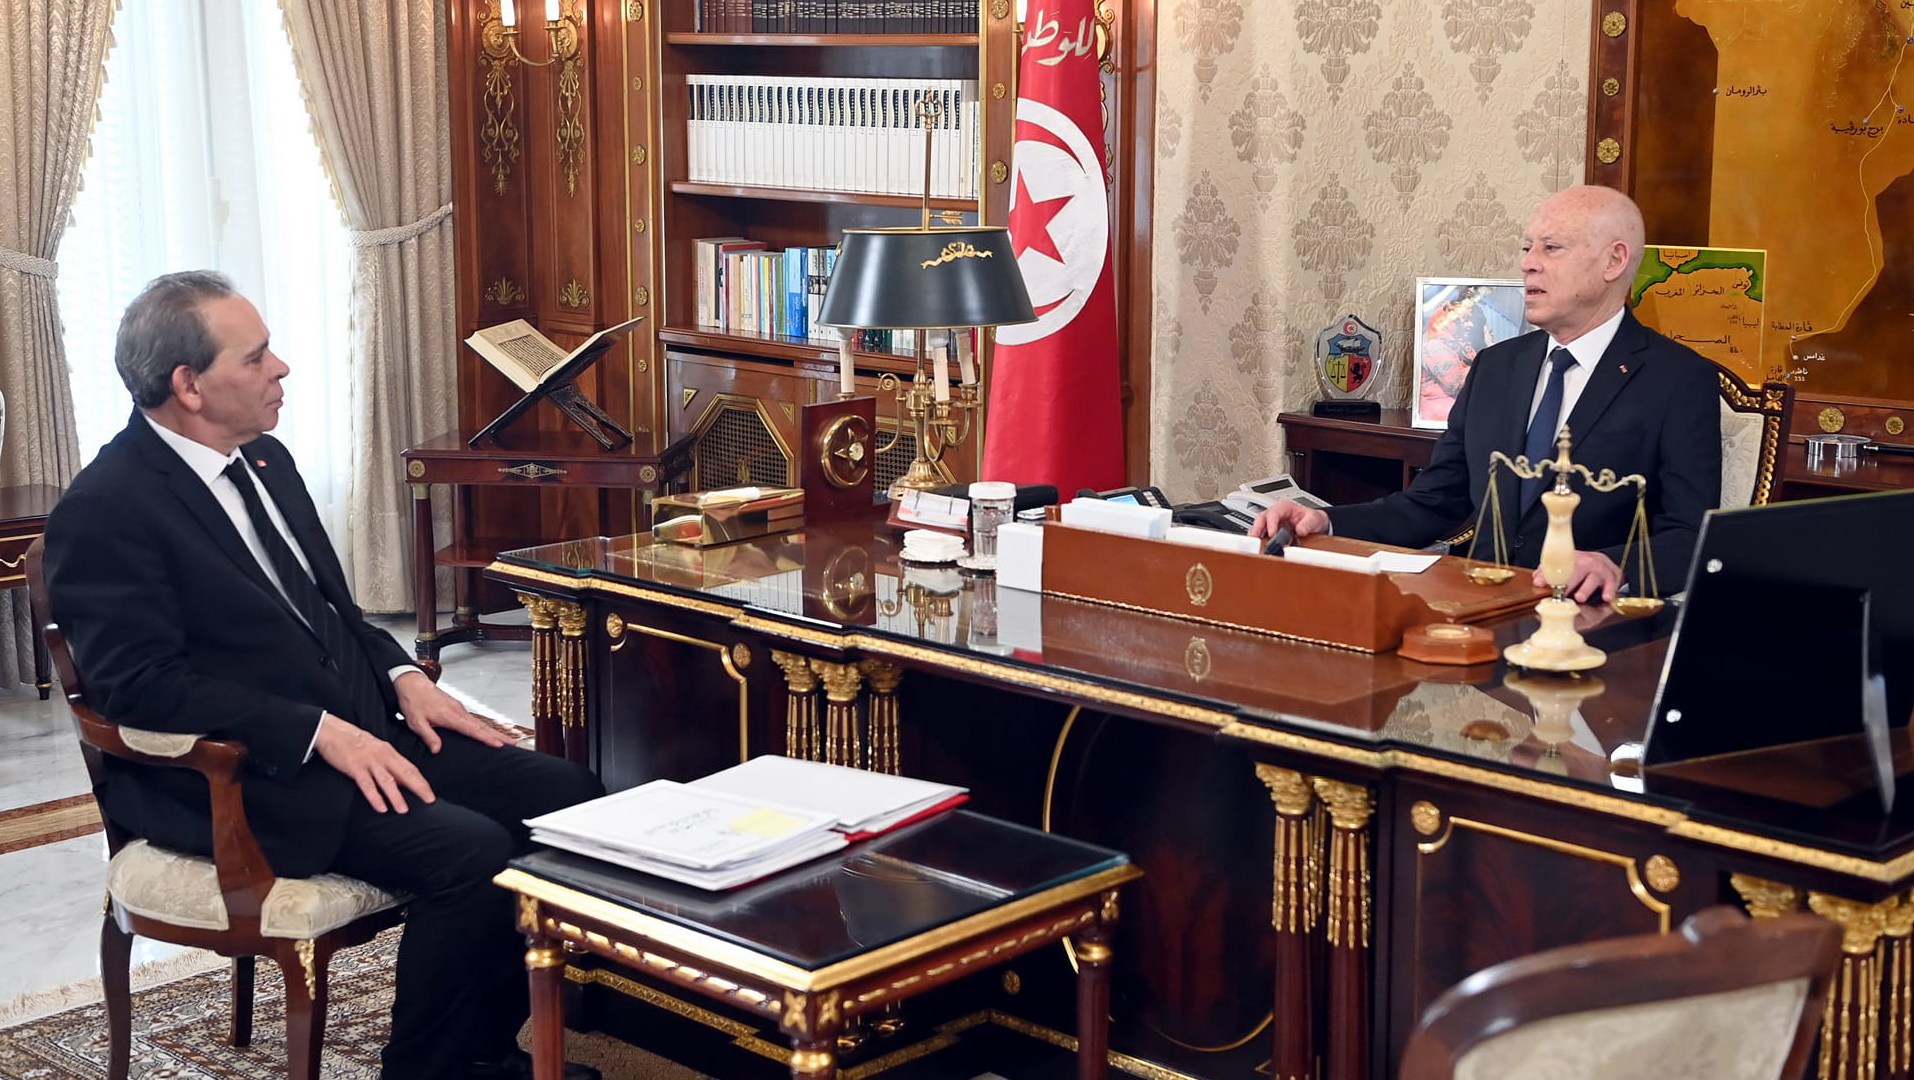 الرئيس ‬التونسي يقيل وزير الداخلية ضمن تعديل حكومي جزئي | أخبار – البوكس نيوز